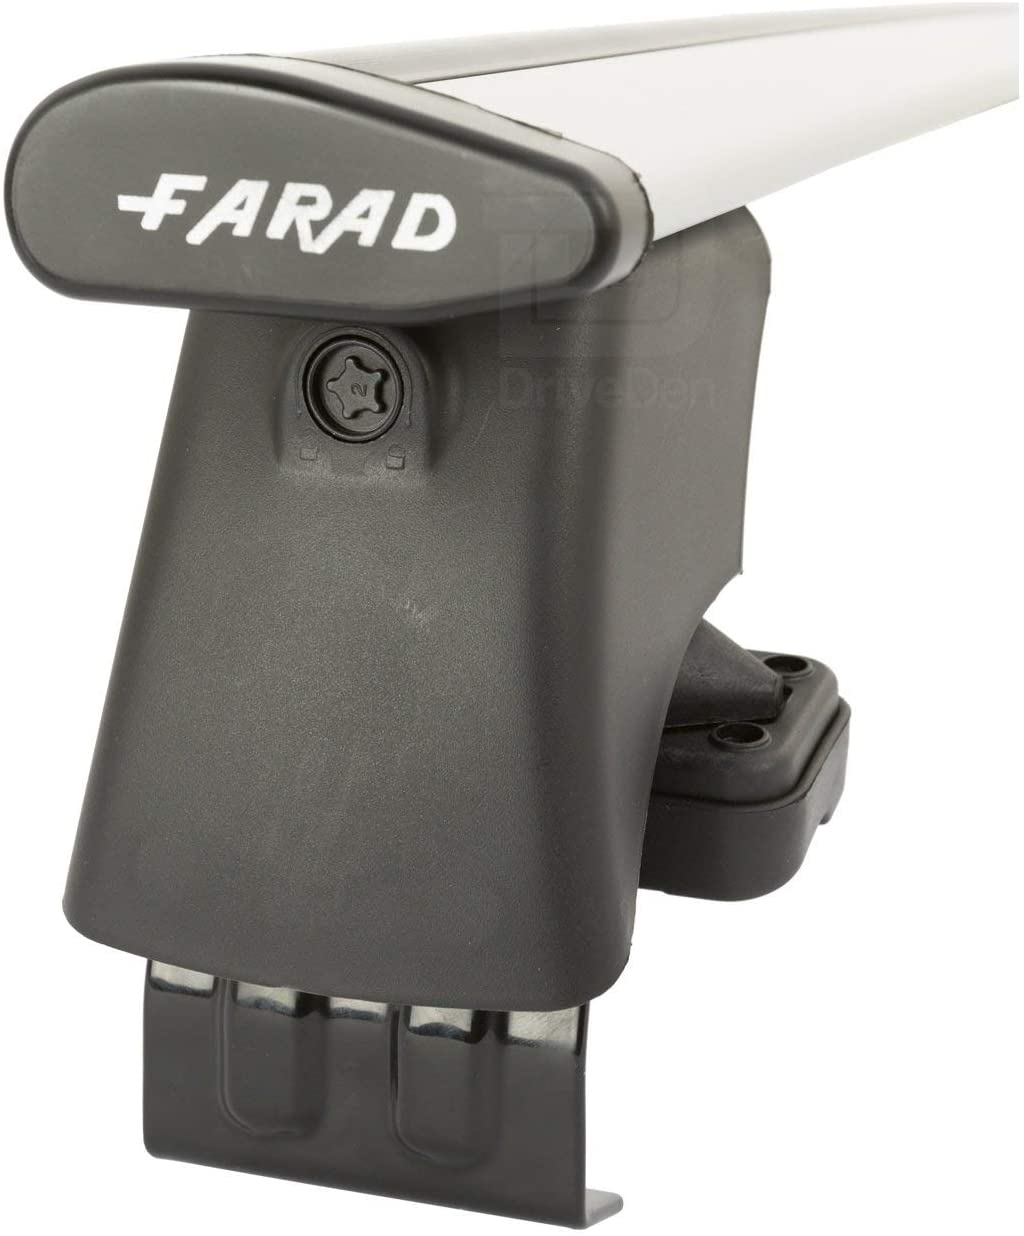 FARAD-Kit H2 per barre portatutto - Volkswagen Jetta 2011> (senza corrimano)